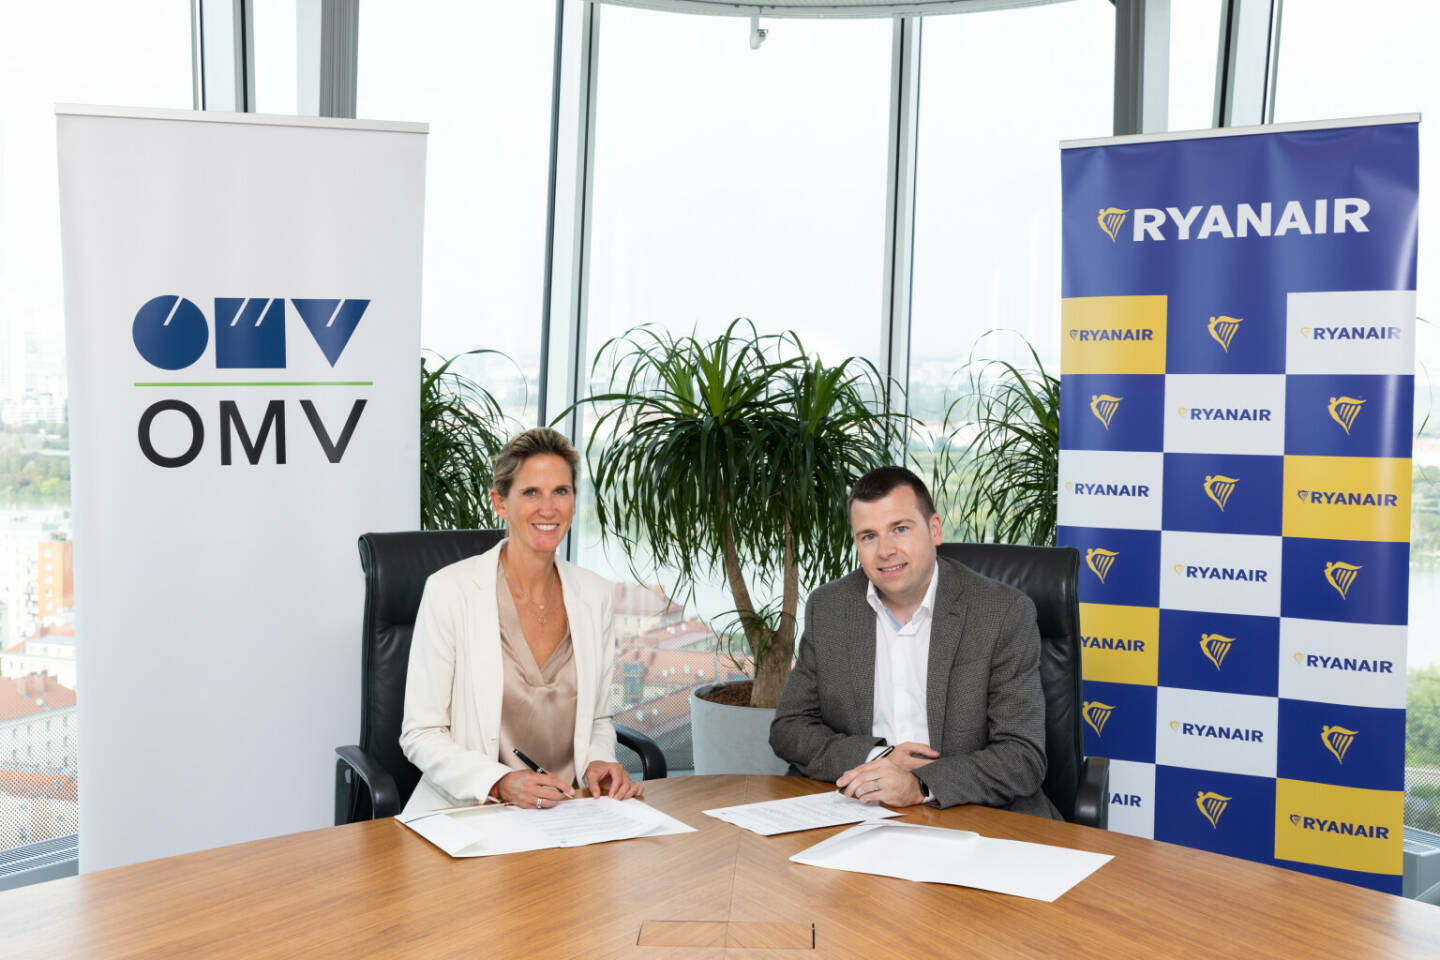 OMV liefert nachhaltigen Flugzeugtreibstoff an Ryanair: Unterzeichnung der Absichtserklärung in Wien – Nina Marczell, OMV und Thomas Fowler, Ryanair
© OMV